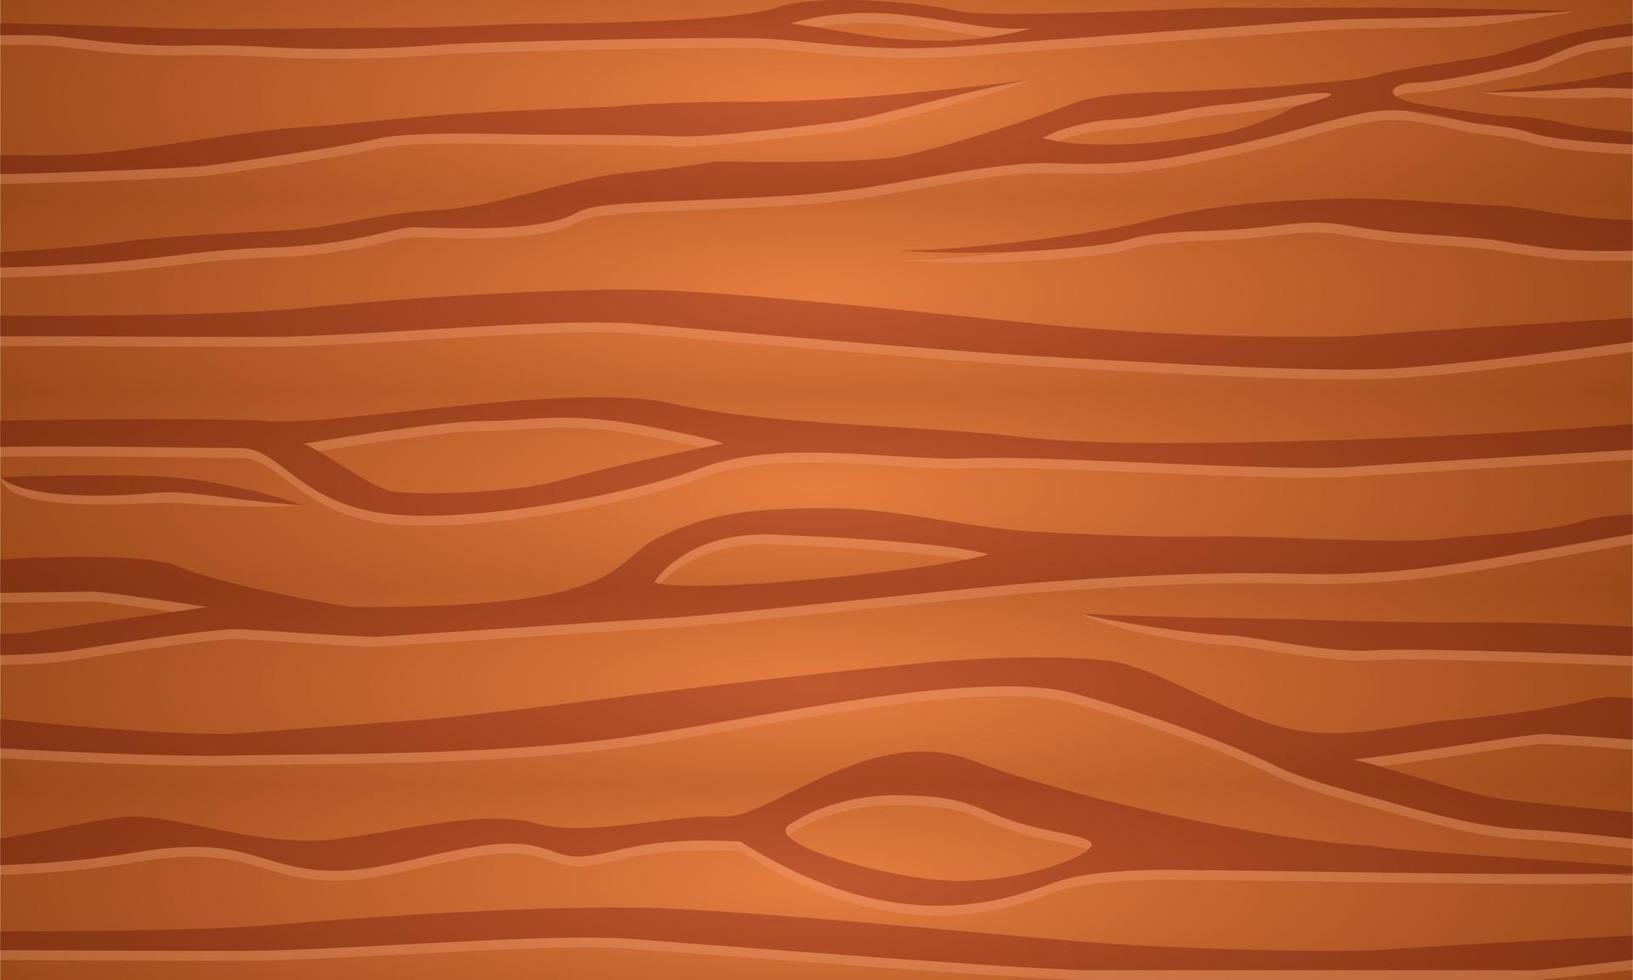 light brown cartoon wood texture pattern wallpaper background vector